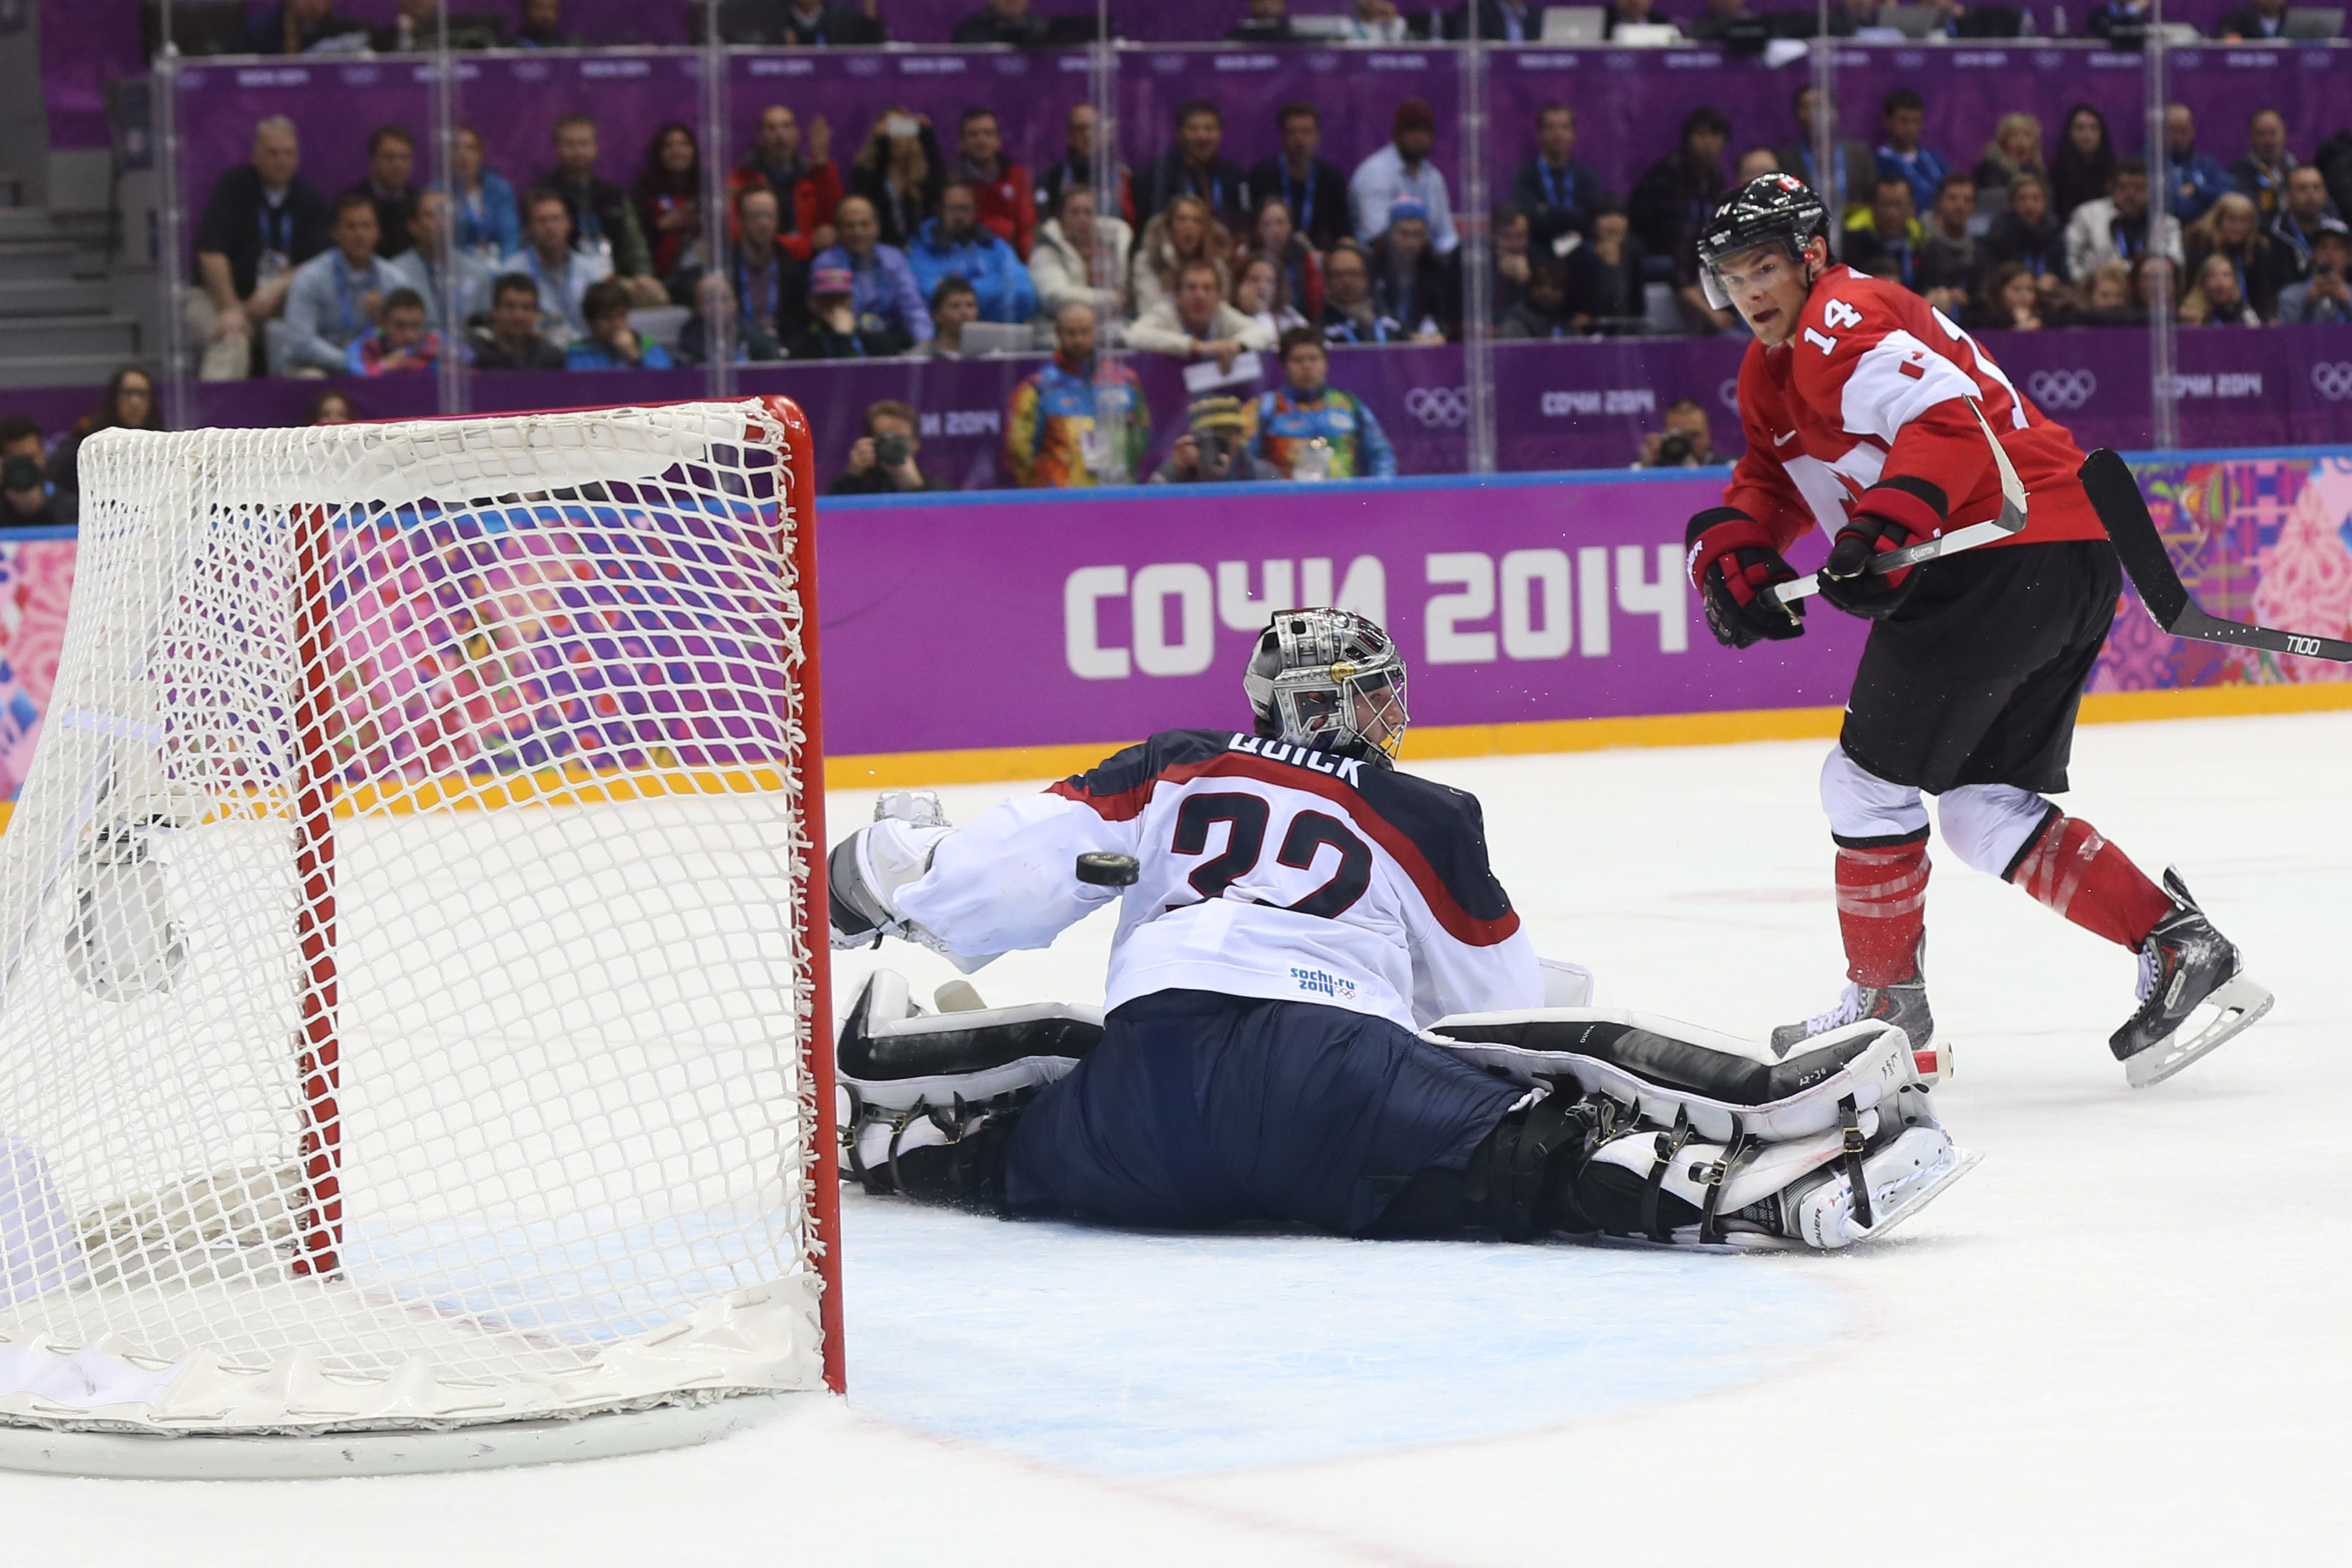 Игры хоккей есть сегодня. Джонатан Куик Сочи 2014. Шайба для хоккея. Хоккей фото. Хоккей с шайбой на Олимпийских играх.